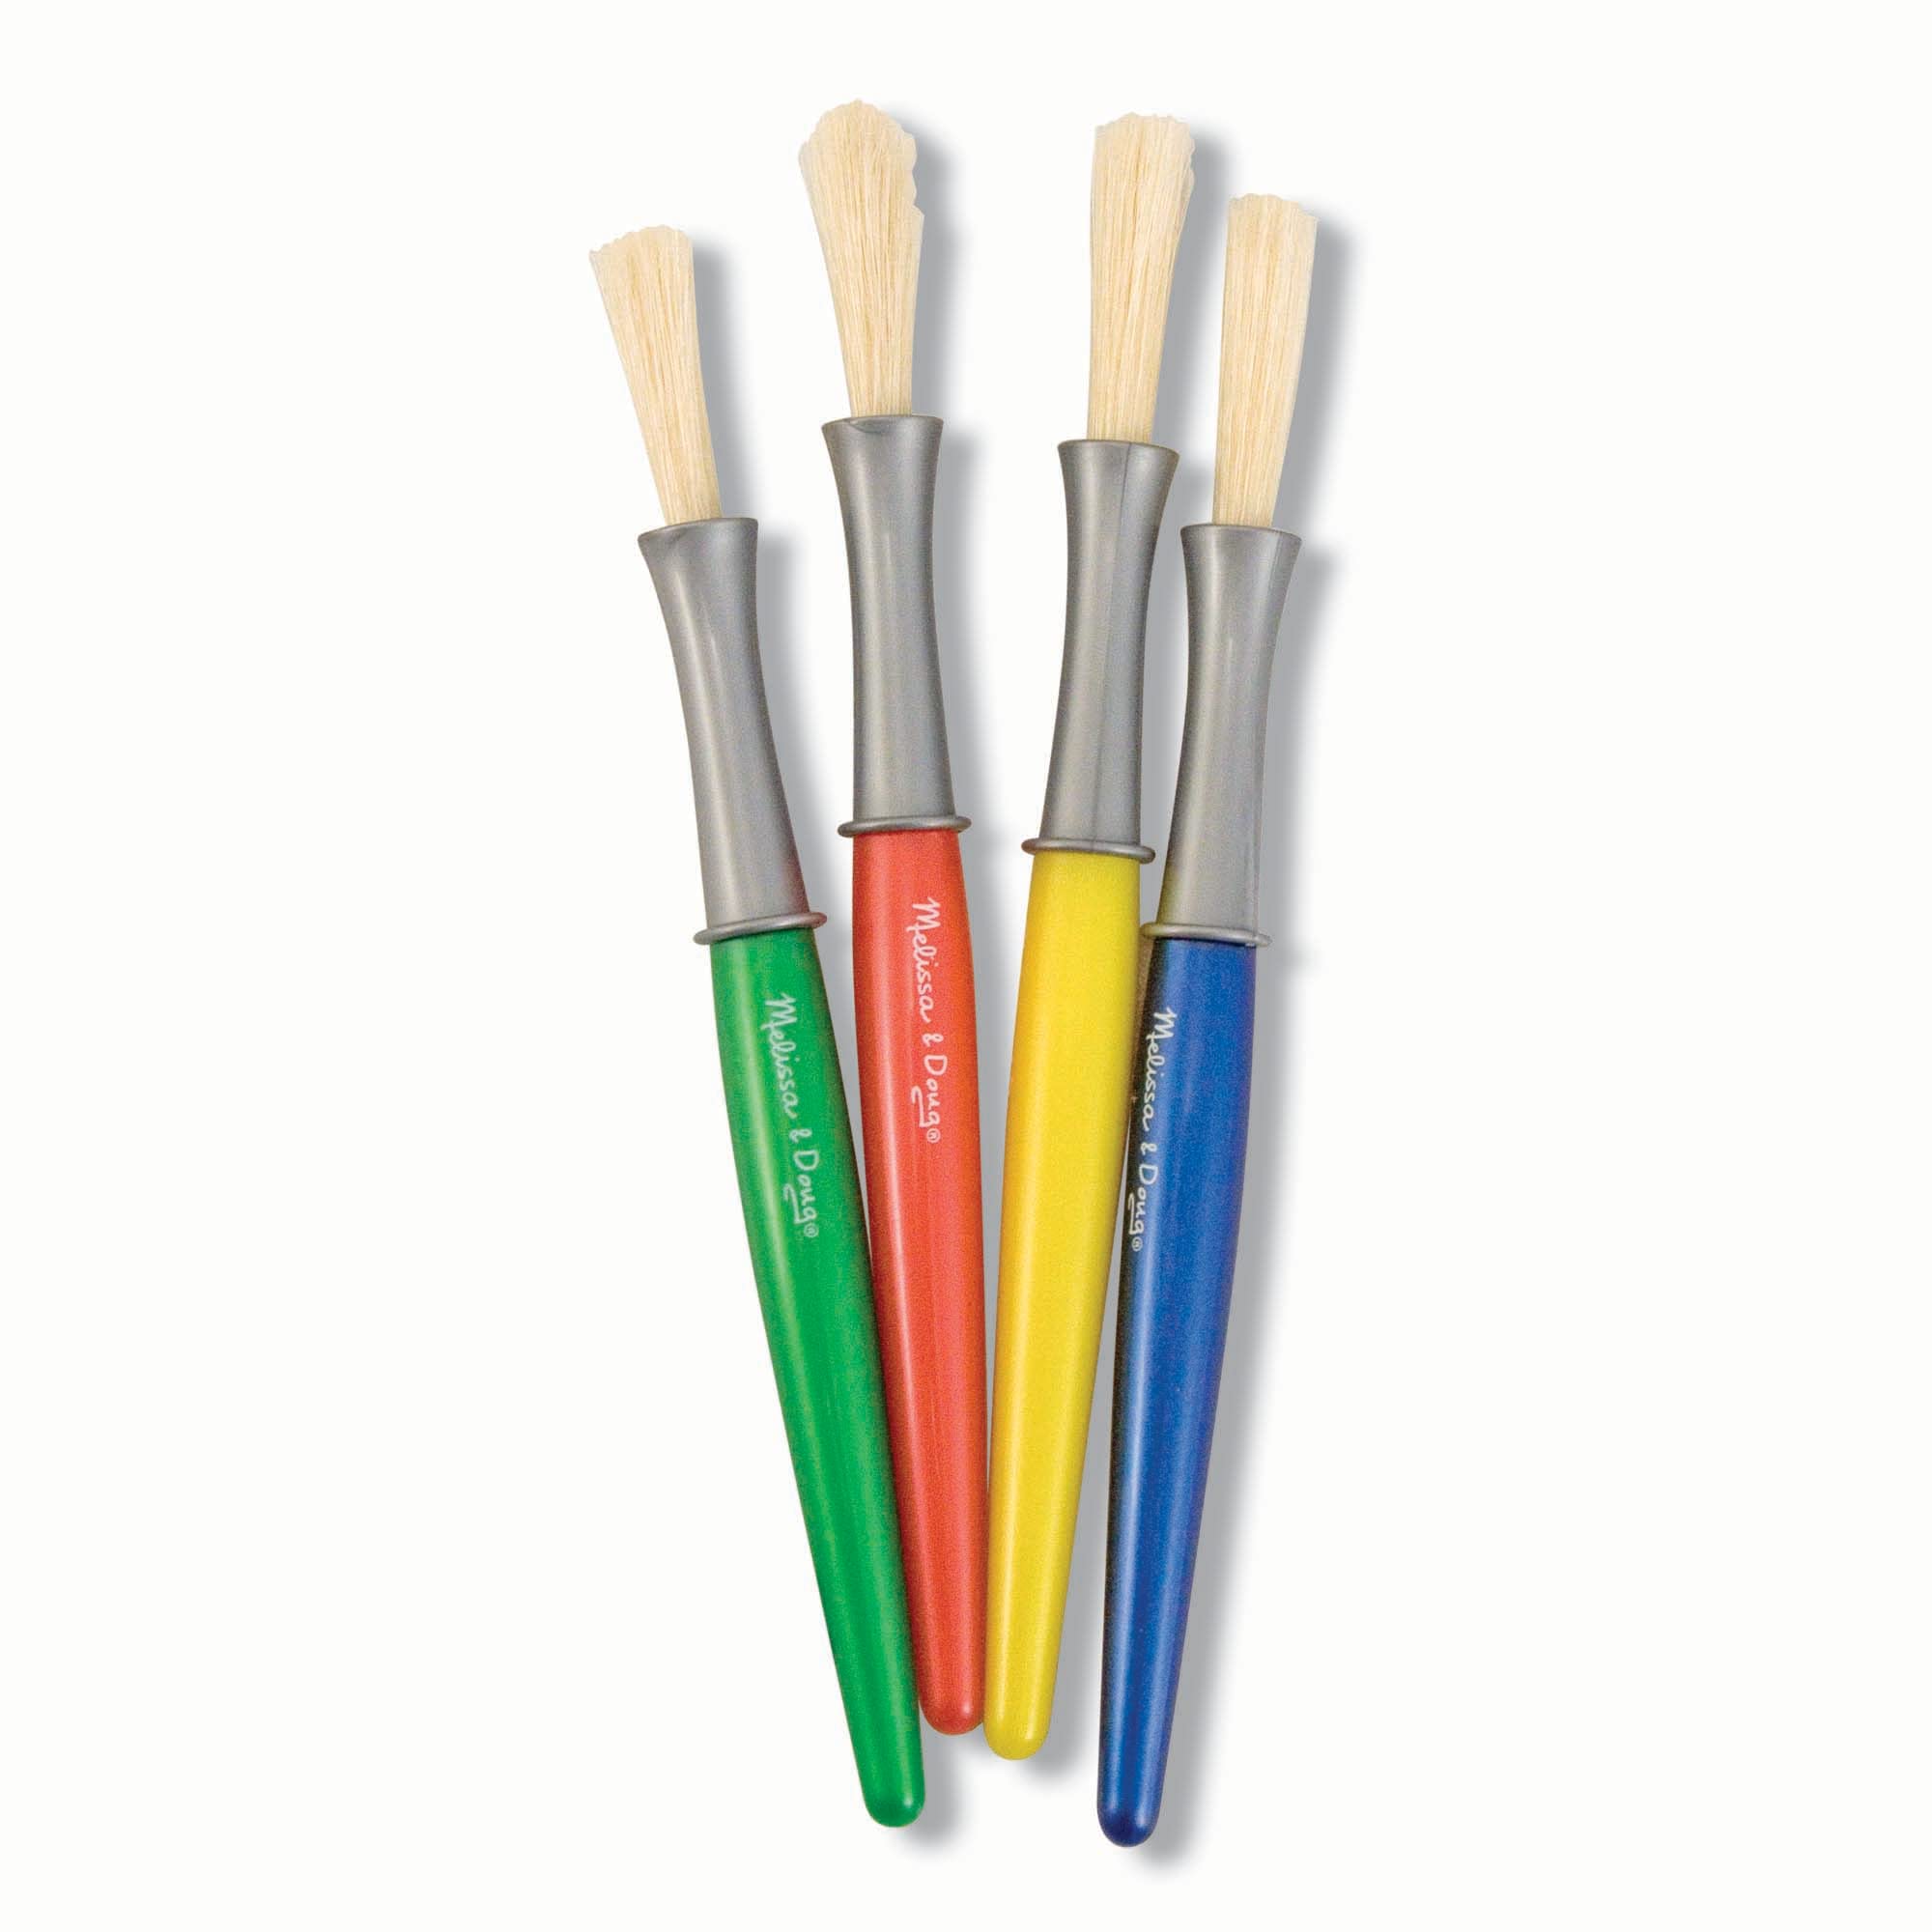 Melissa & Doug Large Paint Brush Set With 4 Kids' Paint Brushes - $2.25